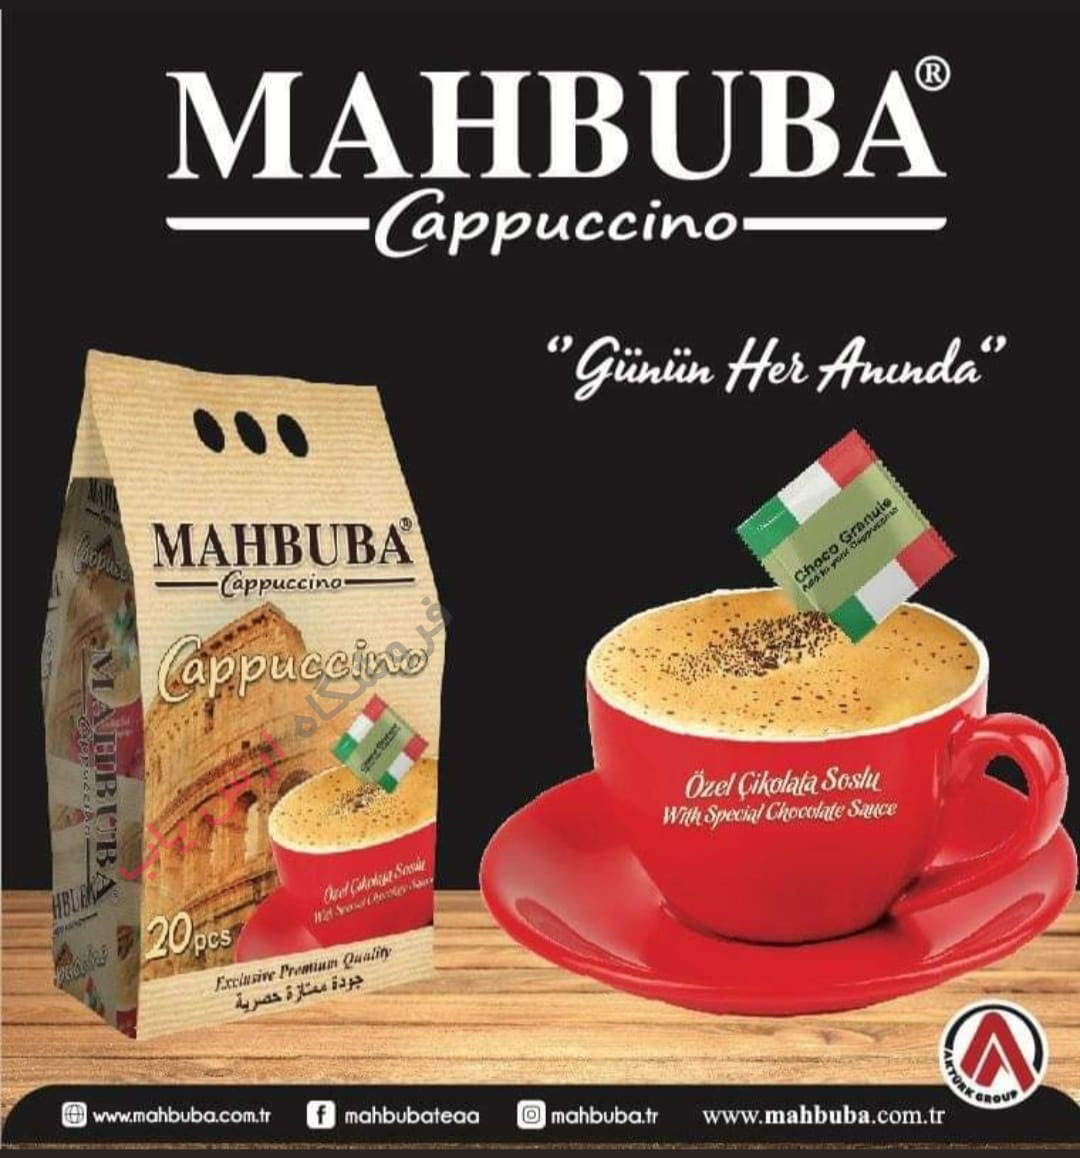 کاپوچینو محبوبا Mahbuba اصل ترکیه